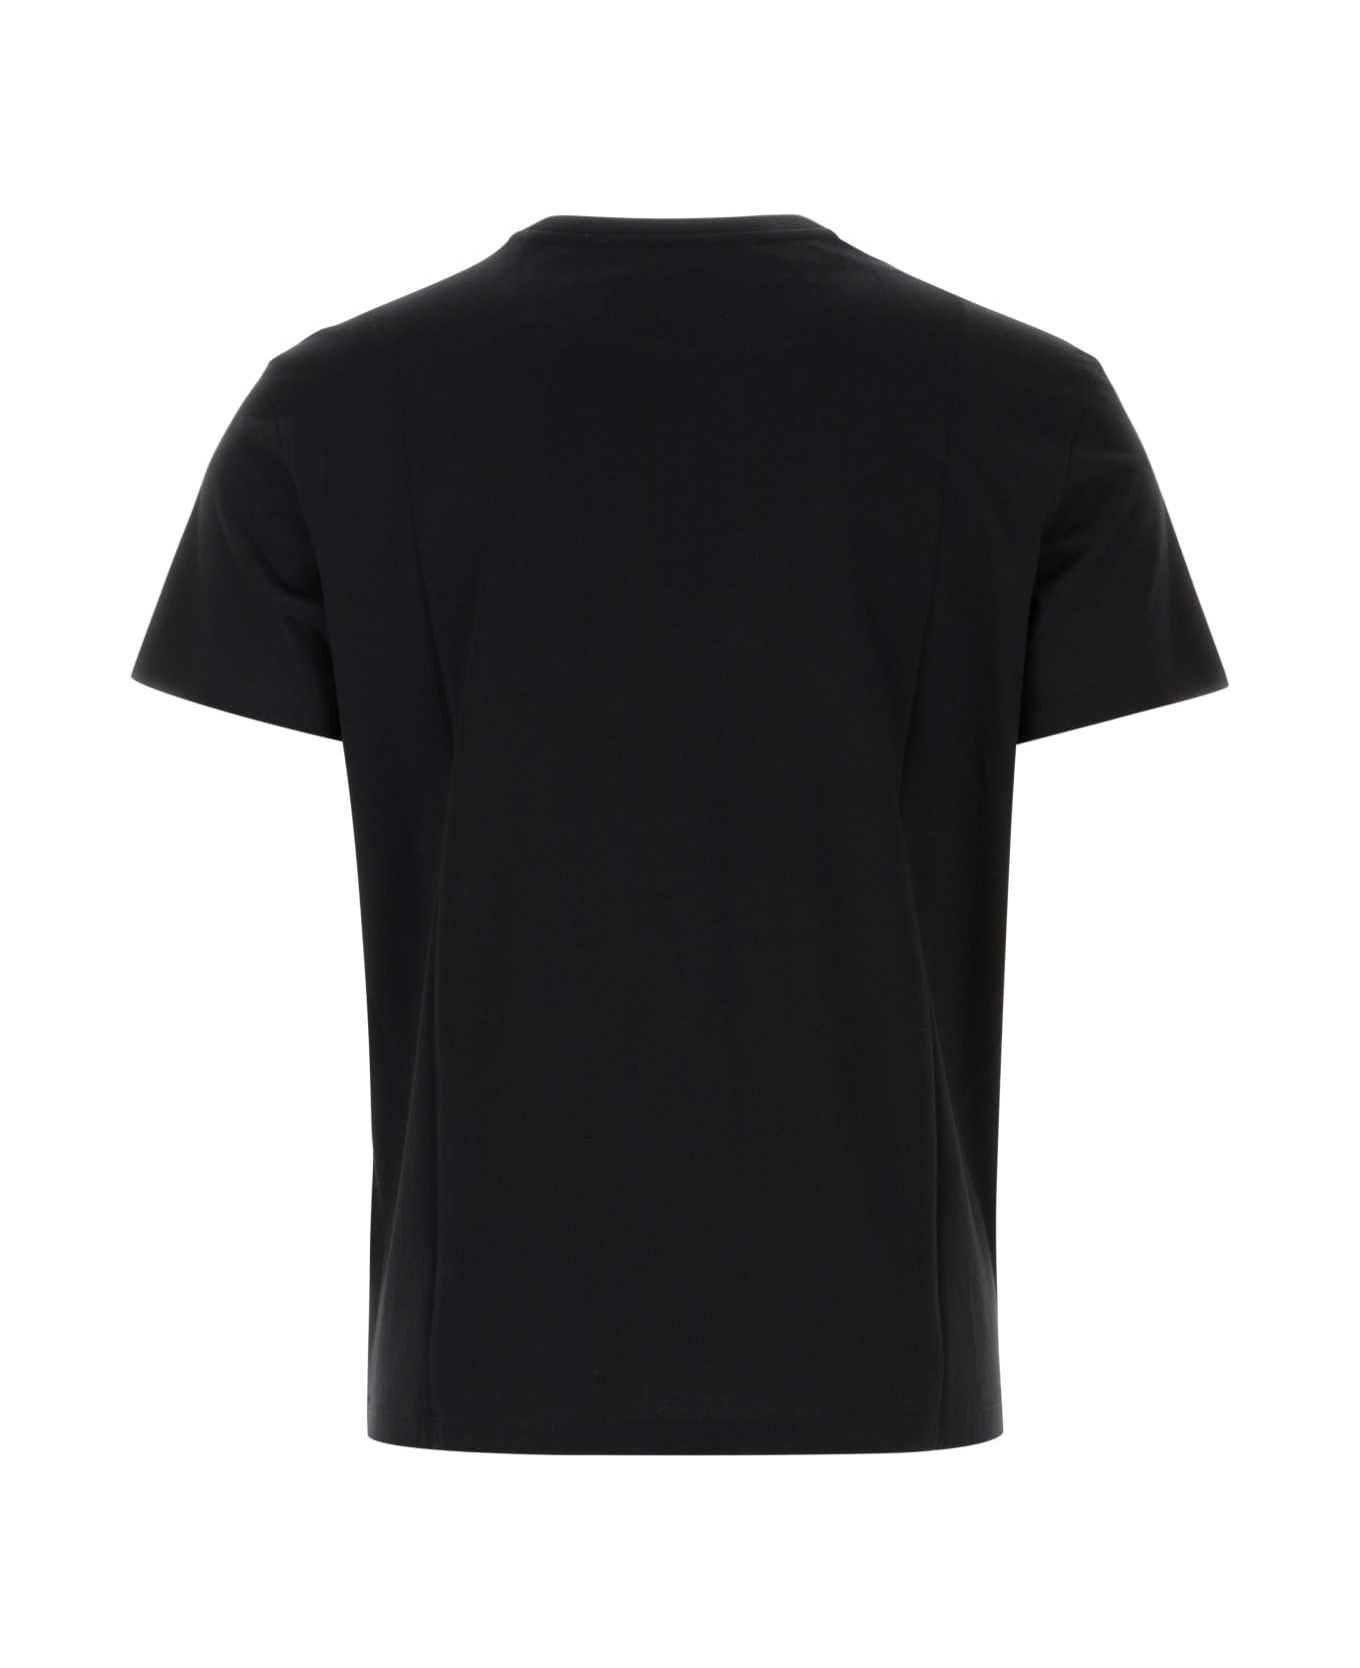 Valentino Garavani Black Cotton T-shirt - NERO